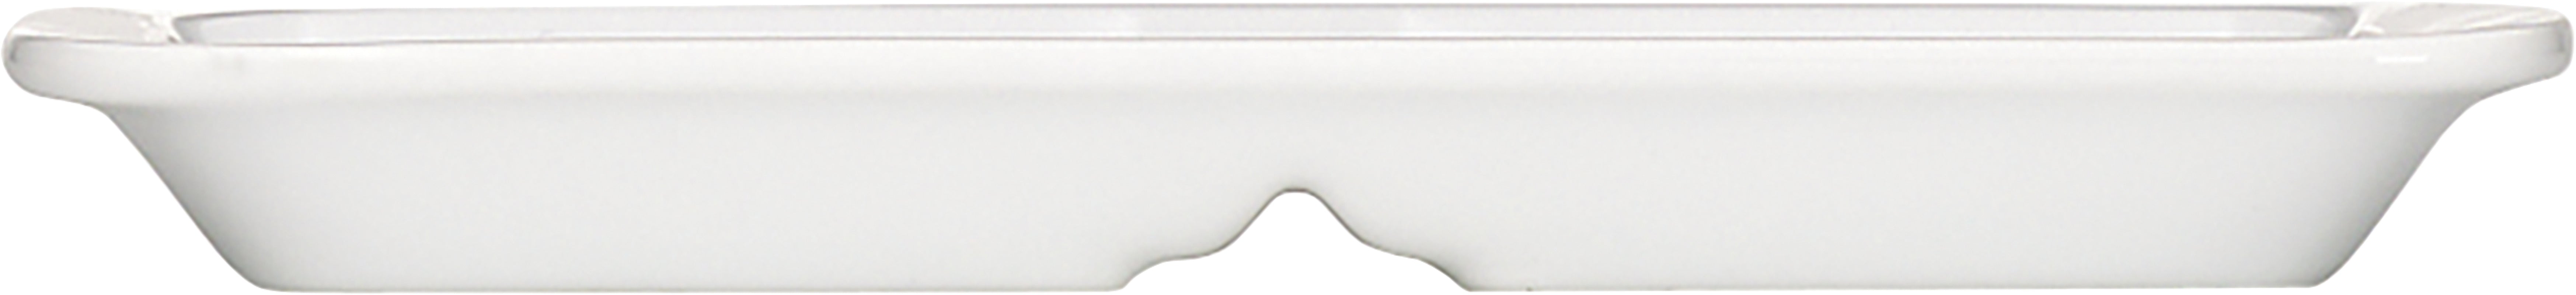 White Rectangular Platter 8.3